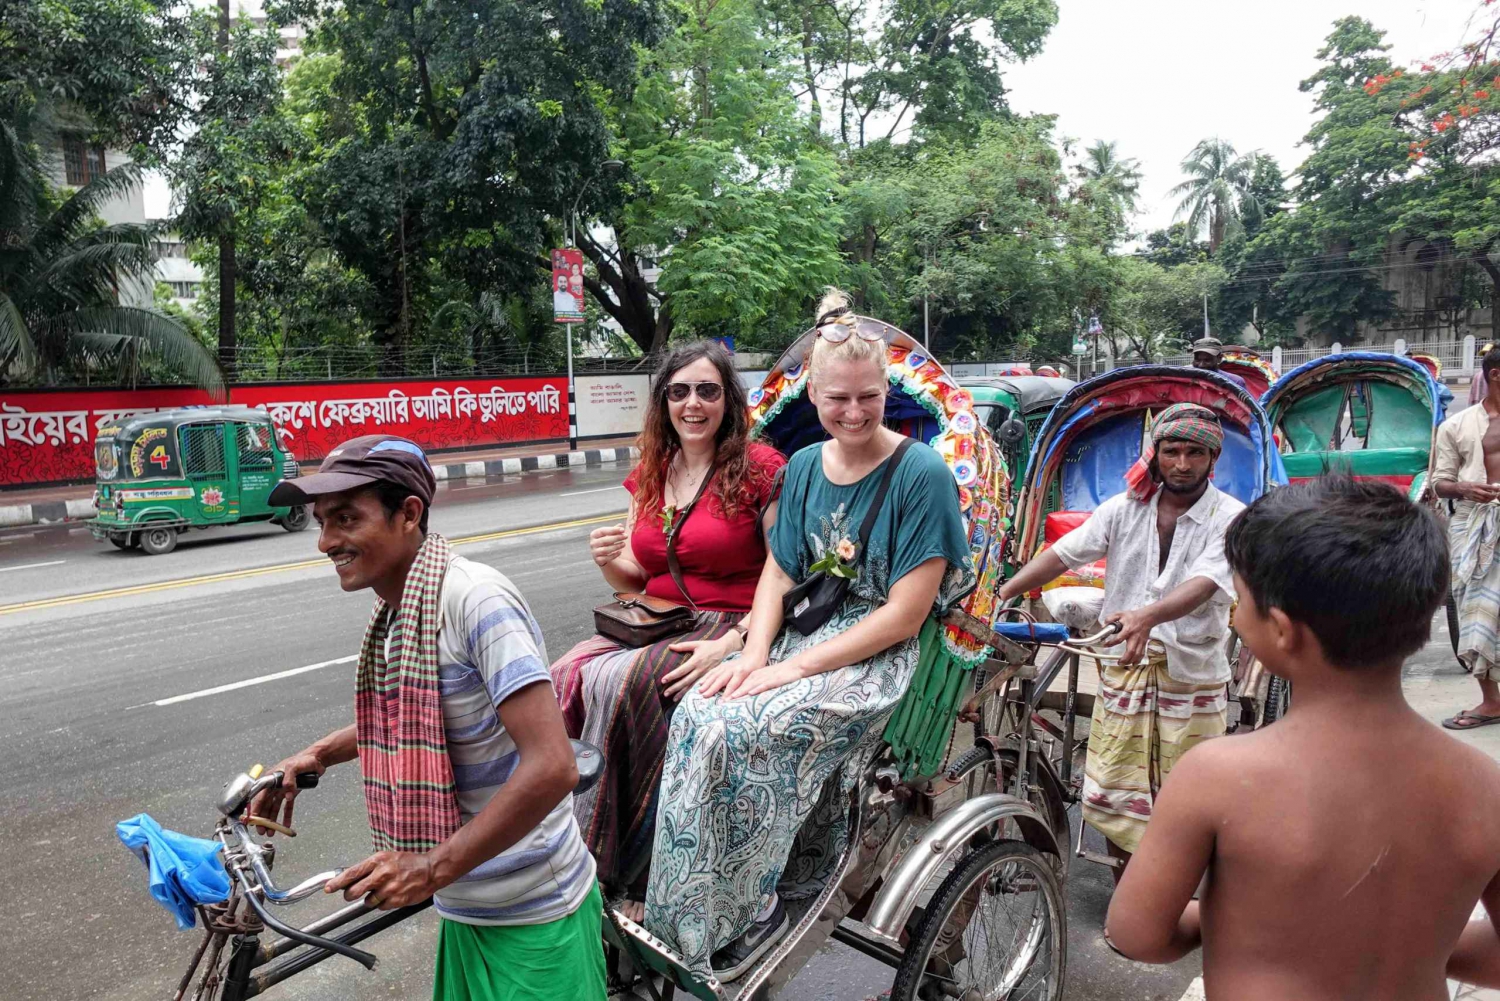 Byvandring i Dhaka på en lokal måte - Utforsk Dhaka som en lokal innbygger